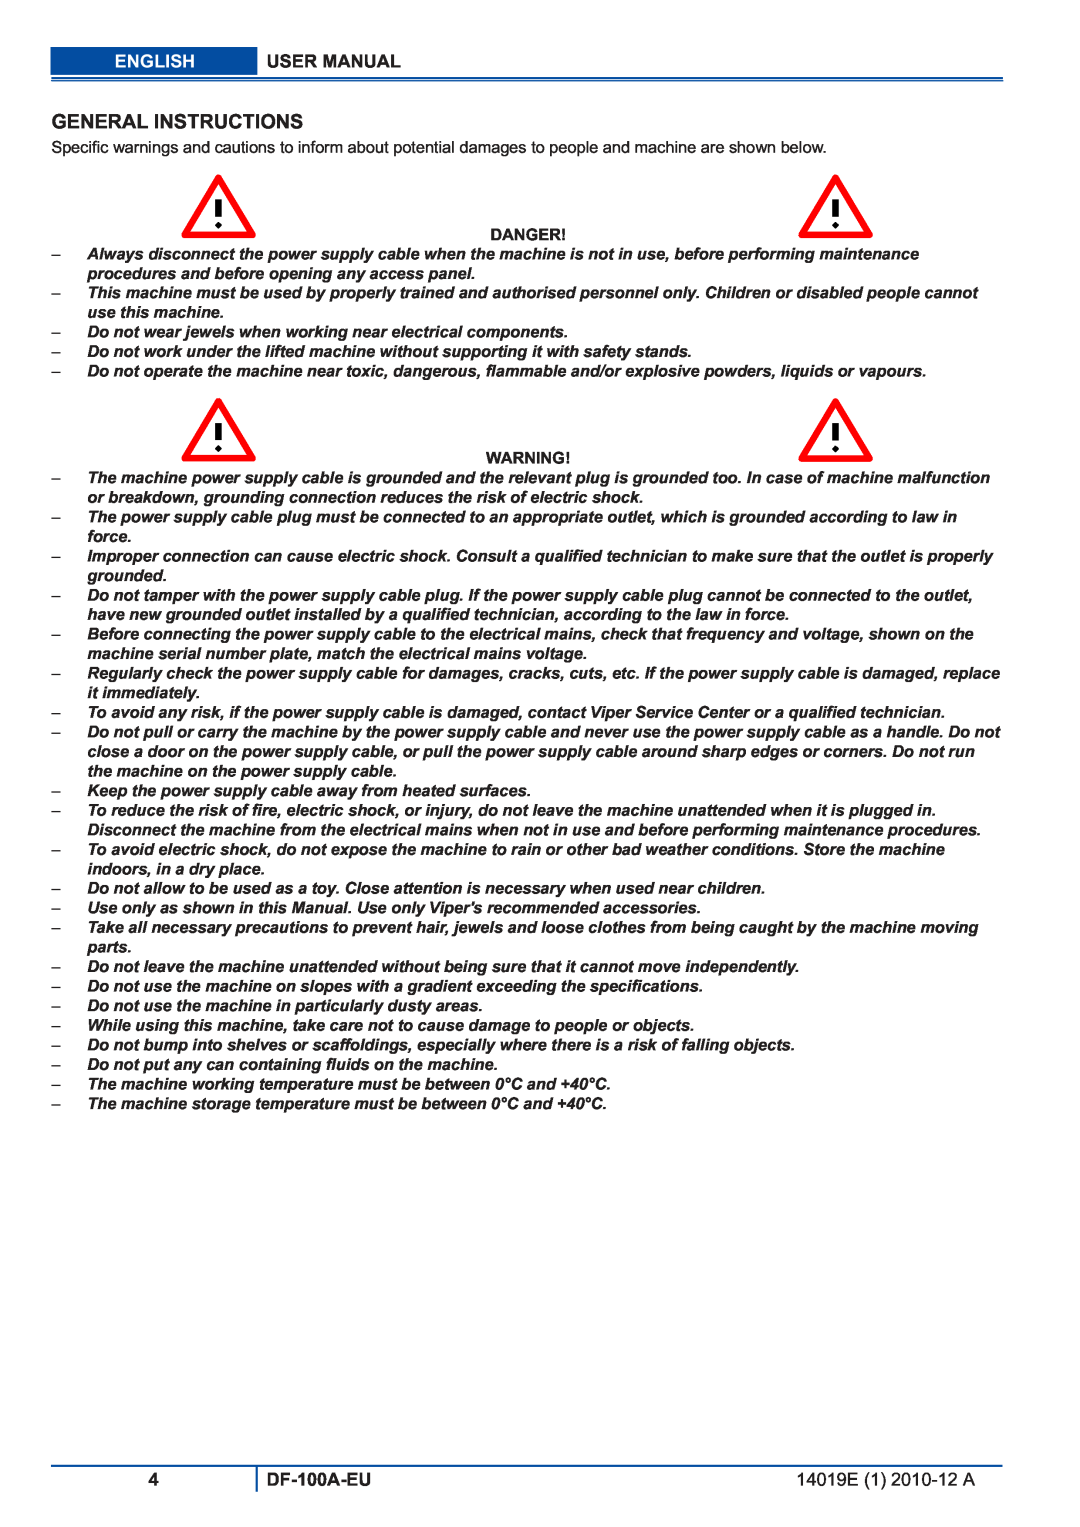 Viper DF-100A-EU user manual General Instructions, English, Danger 